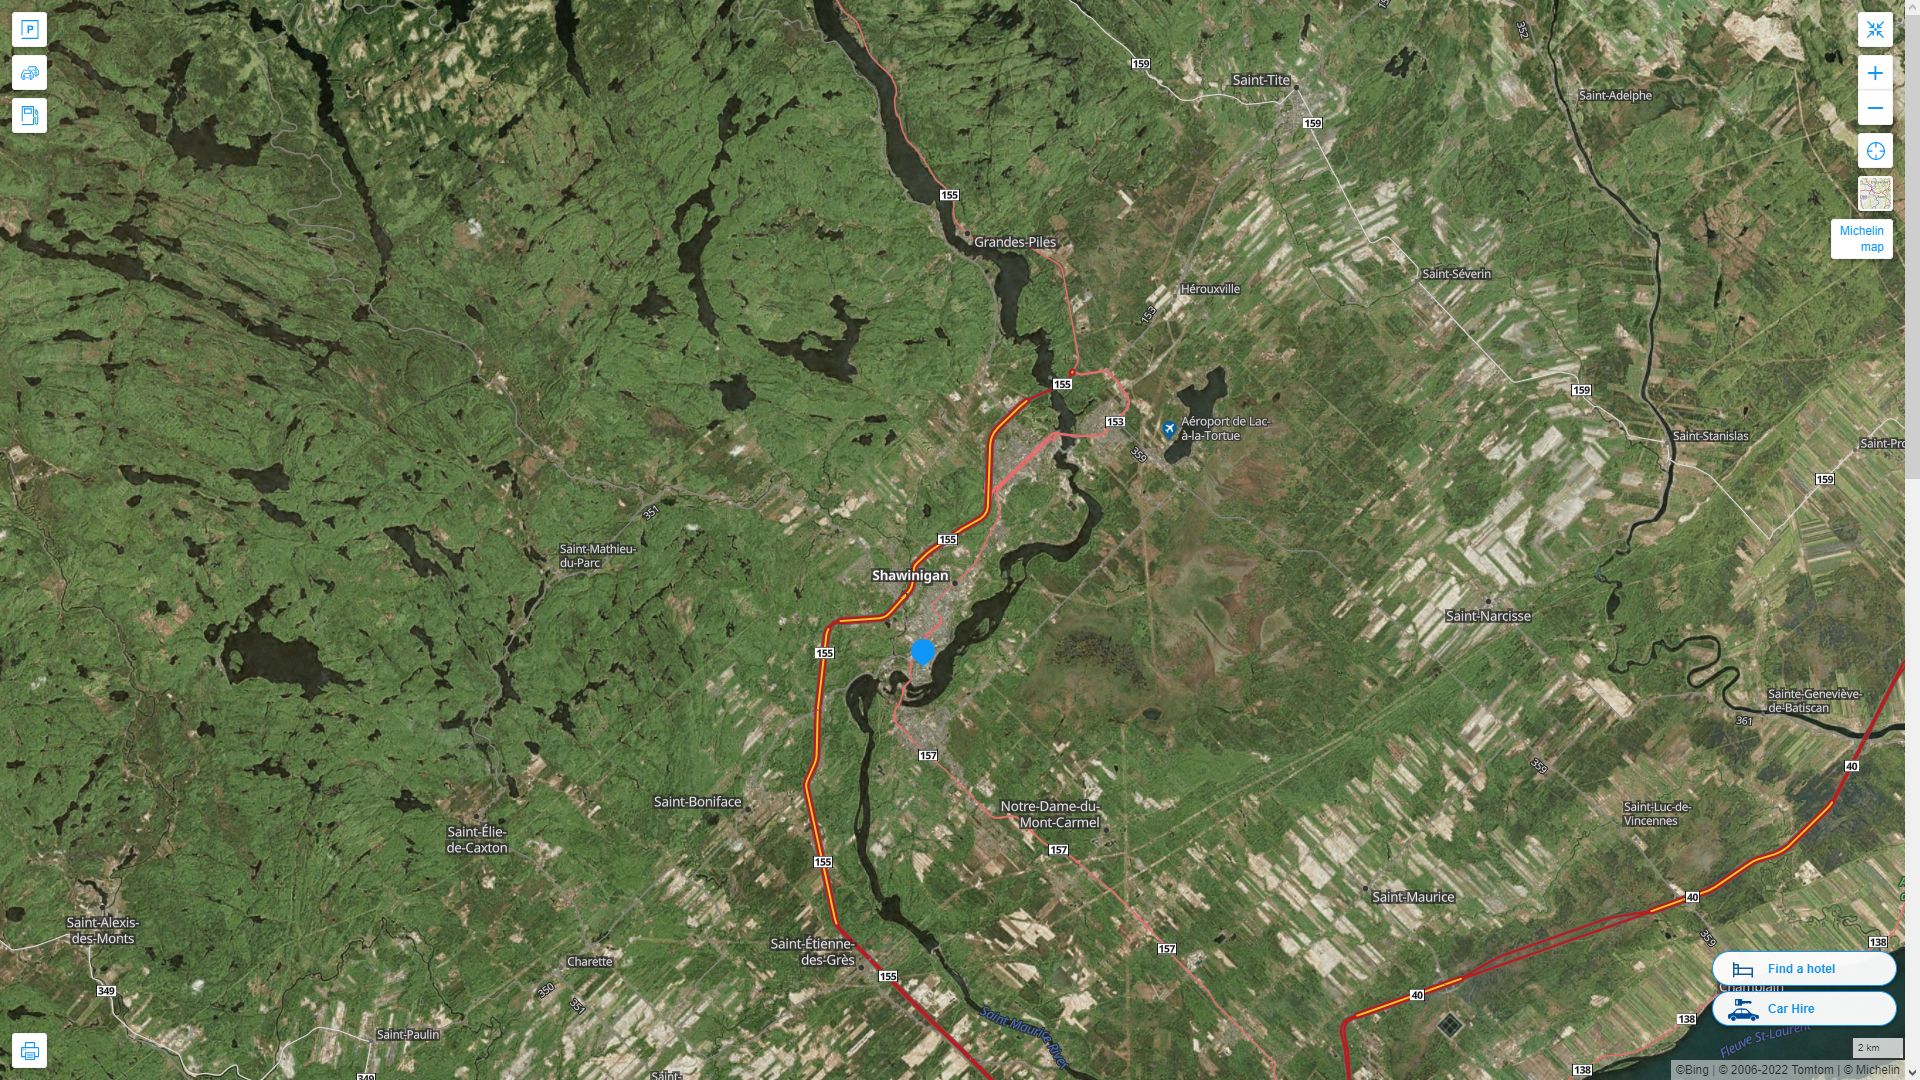 Shawinigan Canada Autoroute et carte routiere avec vue satellite